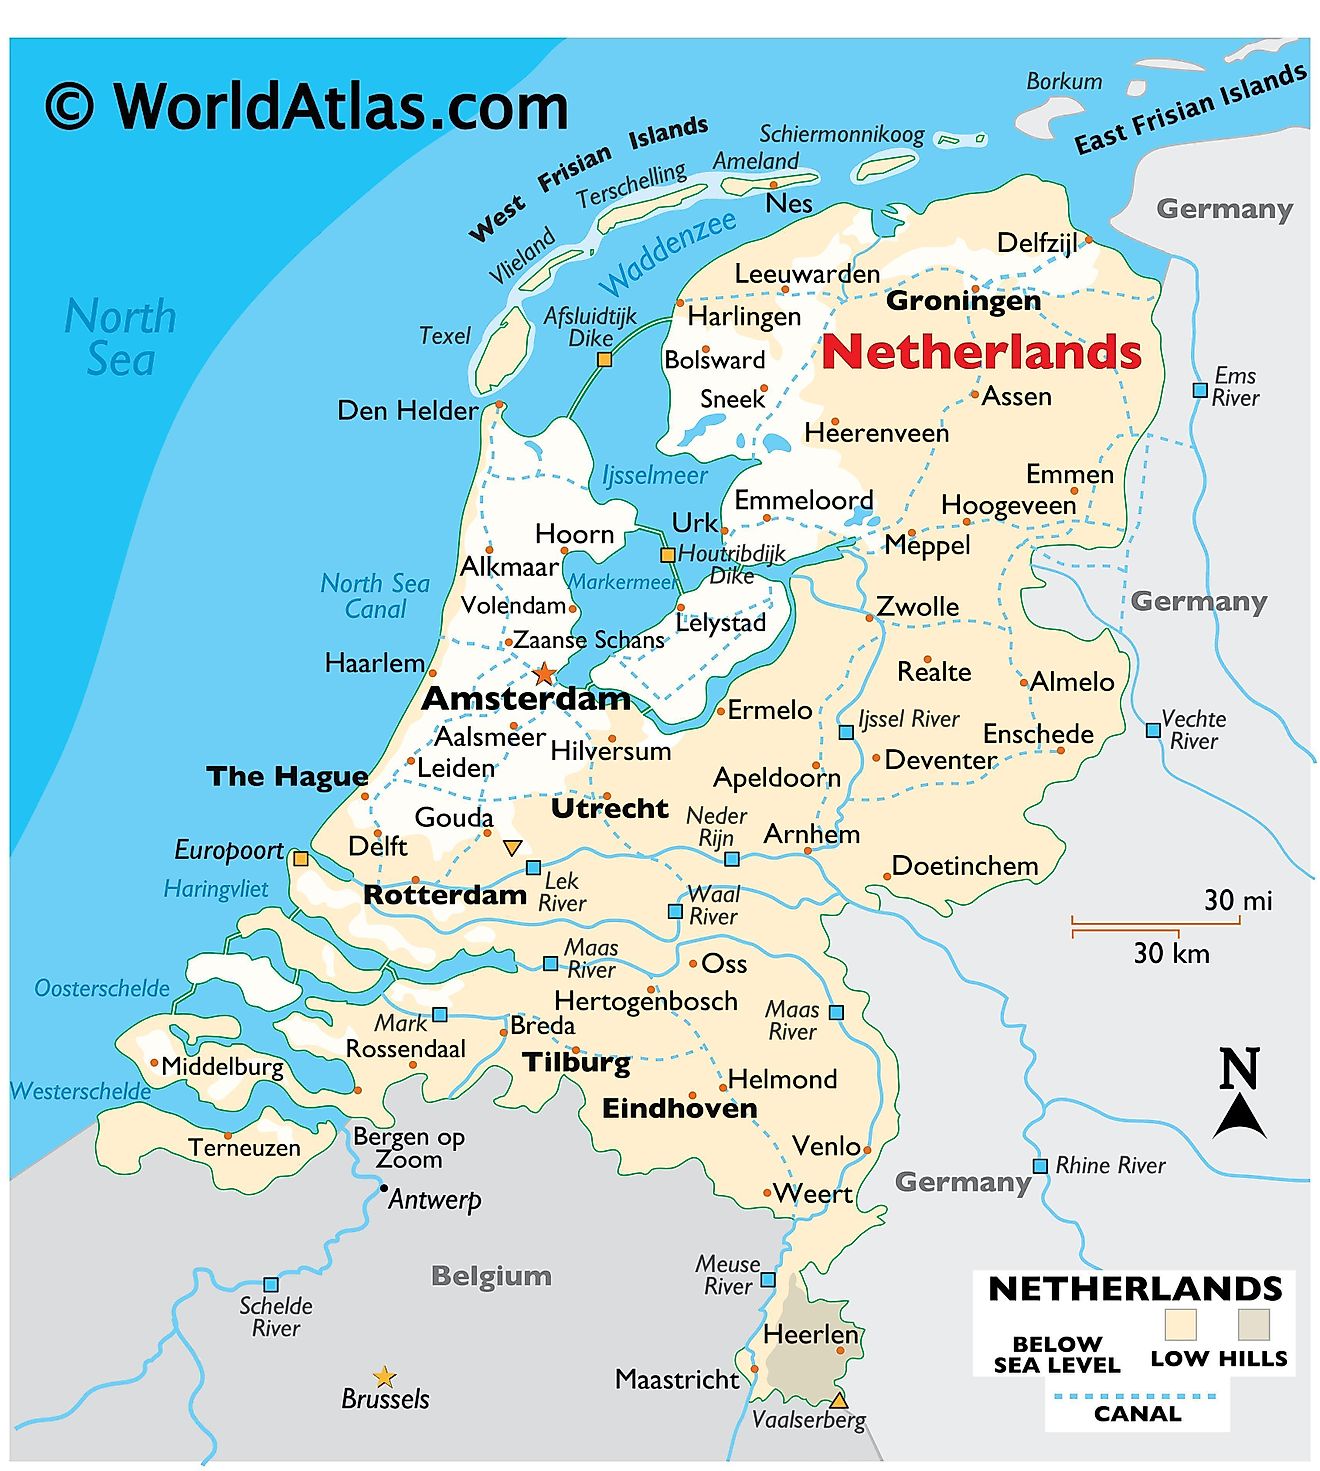 Mappa fisica dei Paesi Bassi che mostra rilievo, confini internazionali, fiumi principali, punti estremi, città importanti, isole, ecc.